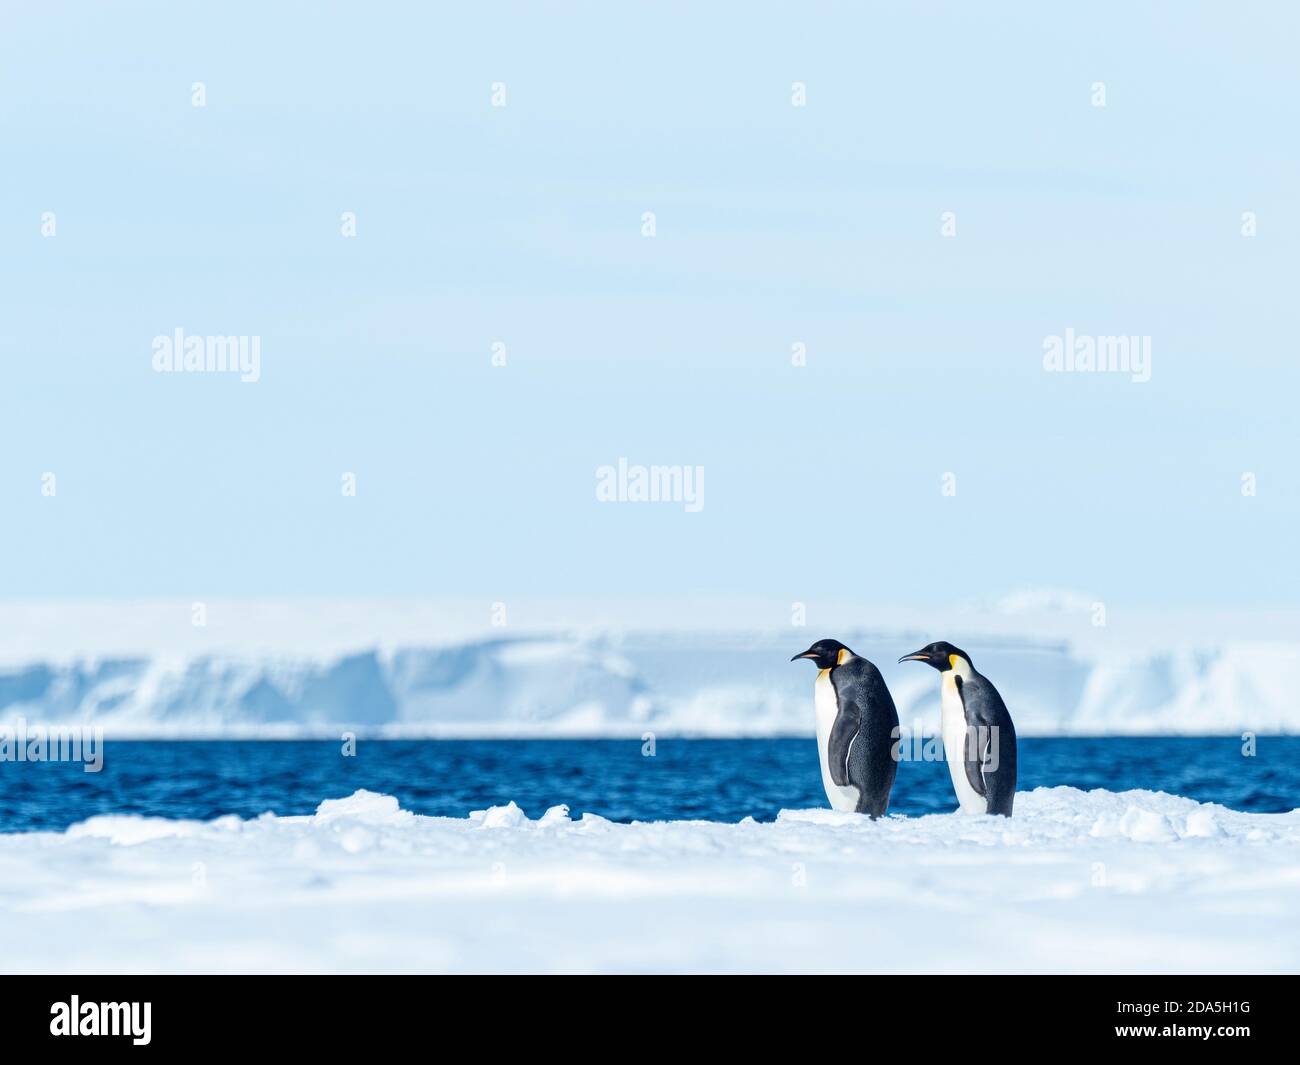 Les pingouins de l'empereur adulte, Aptenodytes forsteri, ont été transportés sur glace près de l'île de Snow Hill, de la mer de Weddell, en Antarctique. Banque D'Images